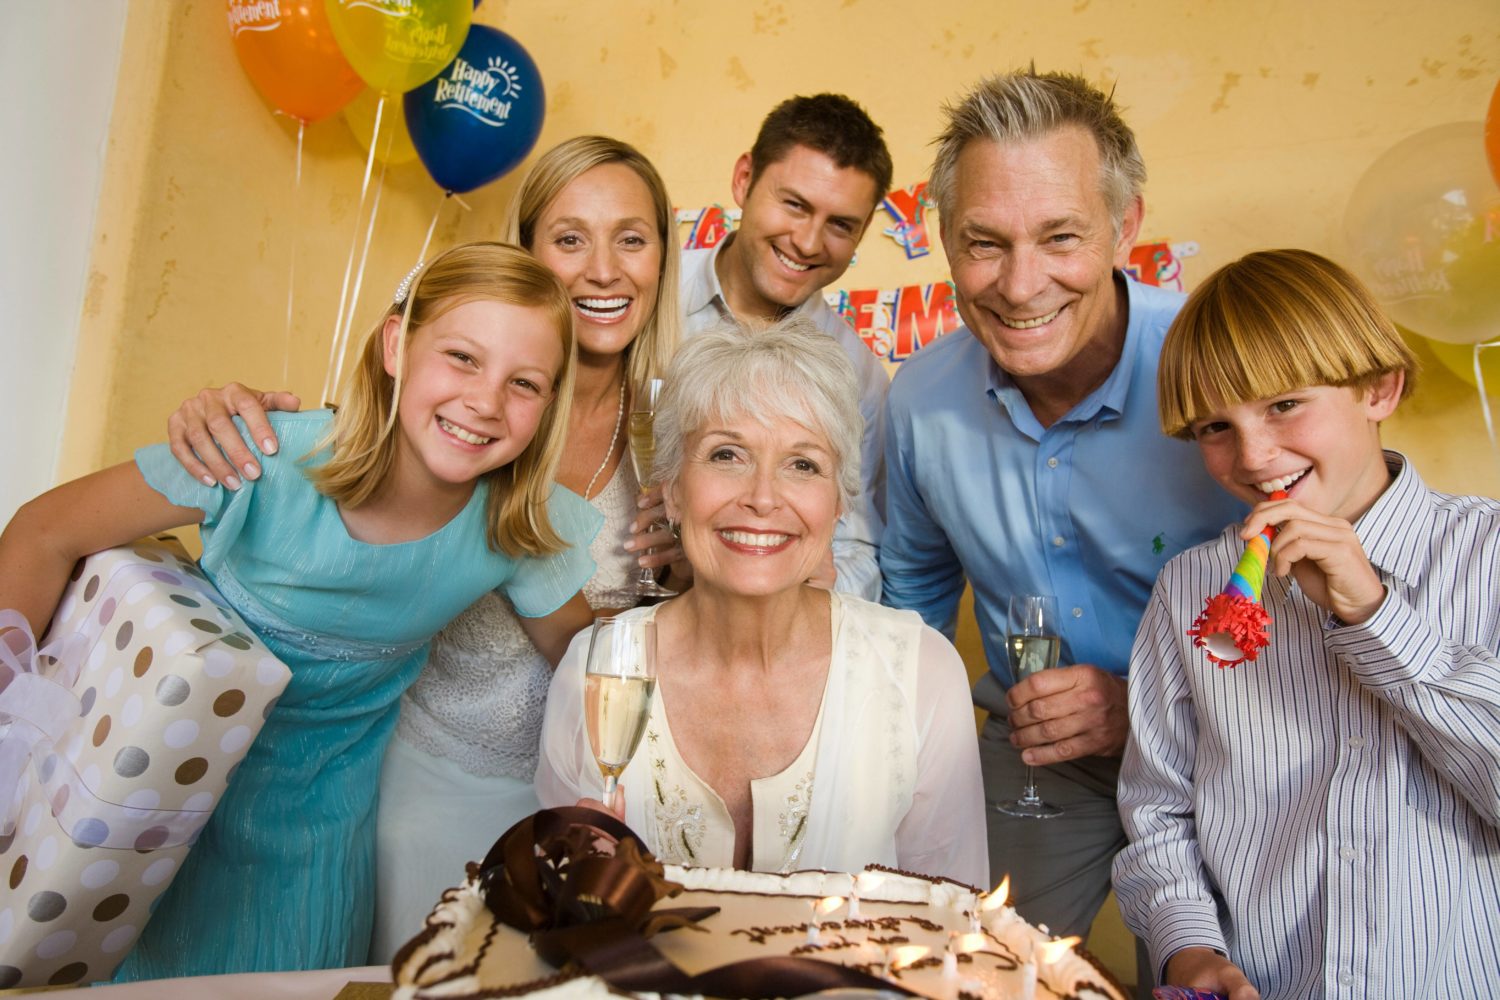 Ansteckung mit Corona: Erst fröhlich mit Oma gefeiert, dann alle krank? Familienfeiern sind ein Top-Ansteckungsszenario. Foto: Imago Images/inigimage